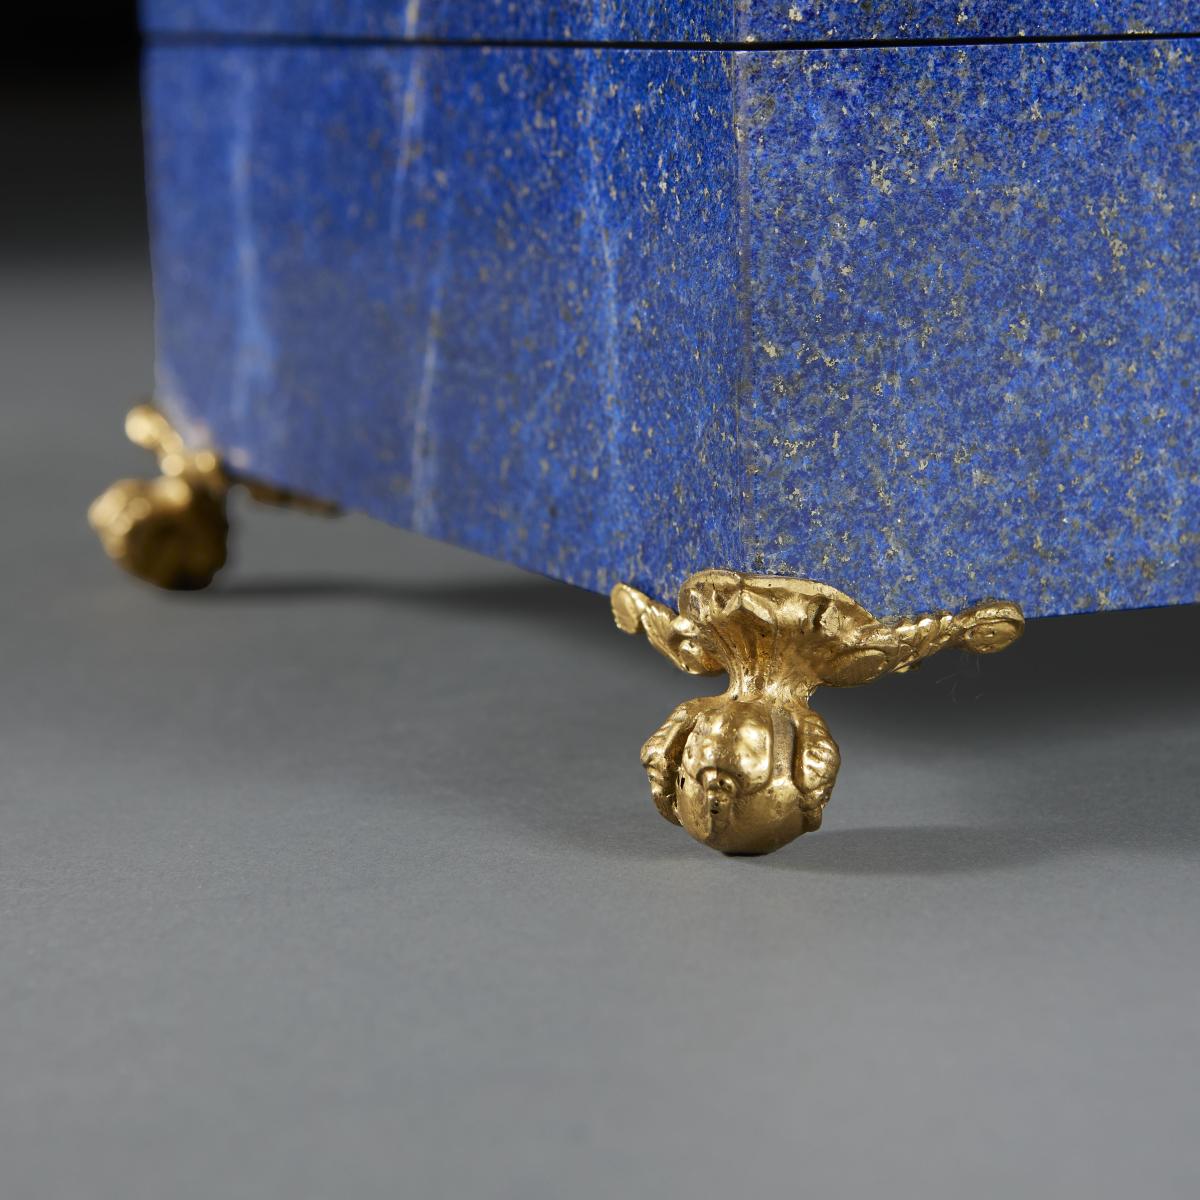 An Art Deco Lapis Lazuli Casket